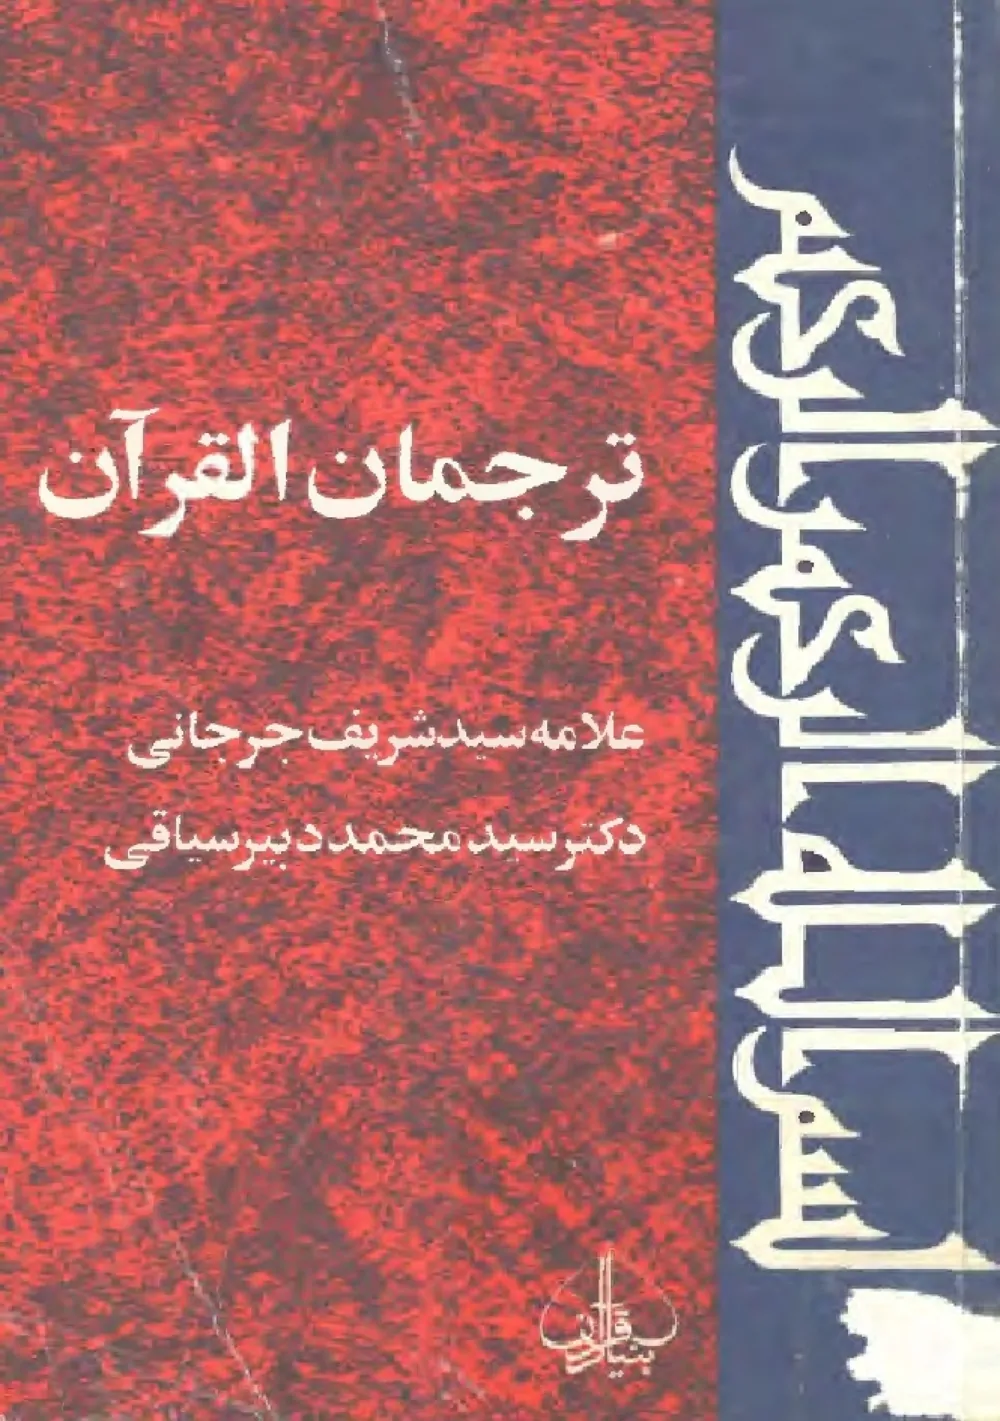 ترجمان القرآن: فرهنگ عربی فارسی - فارسی عربی